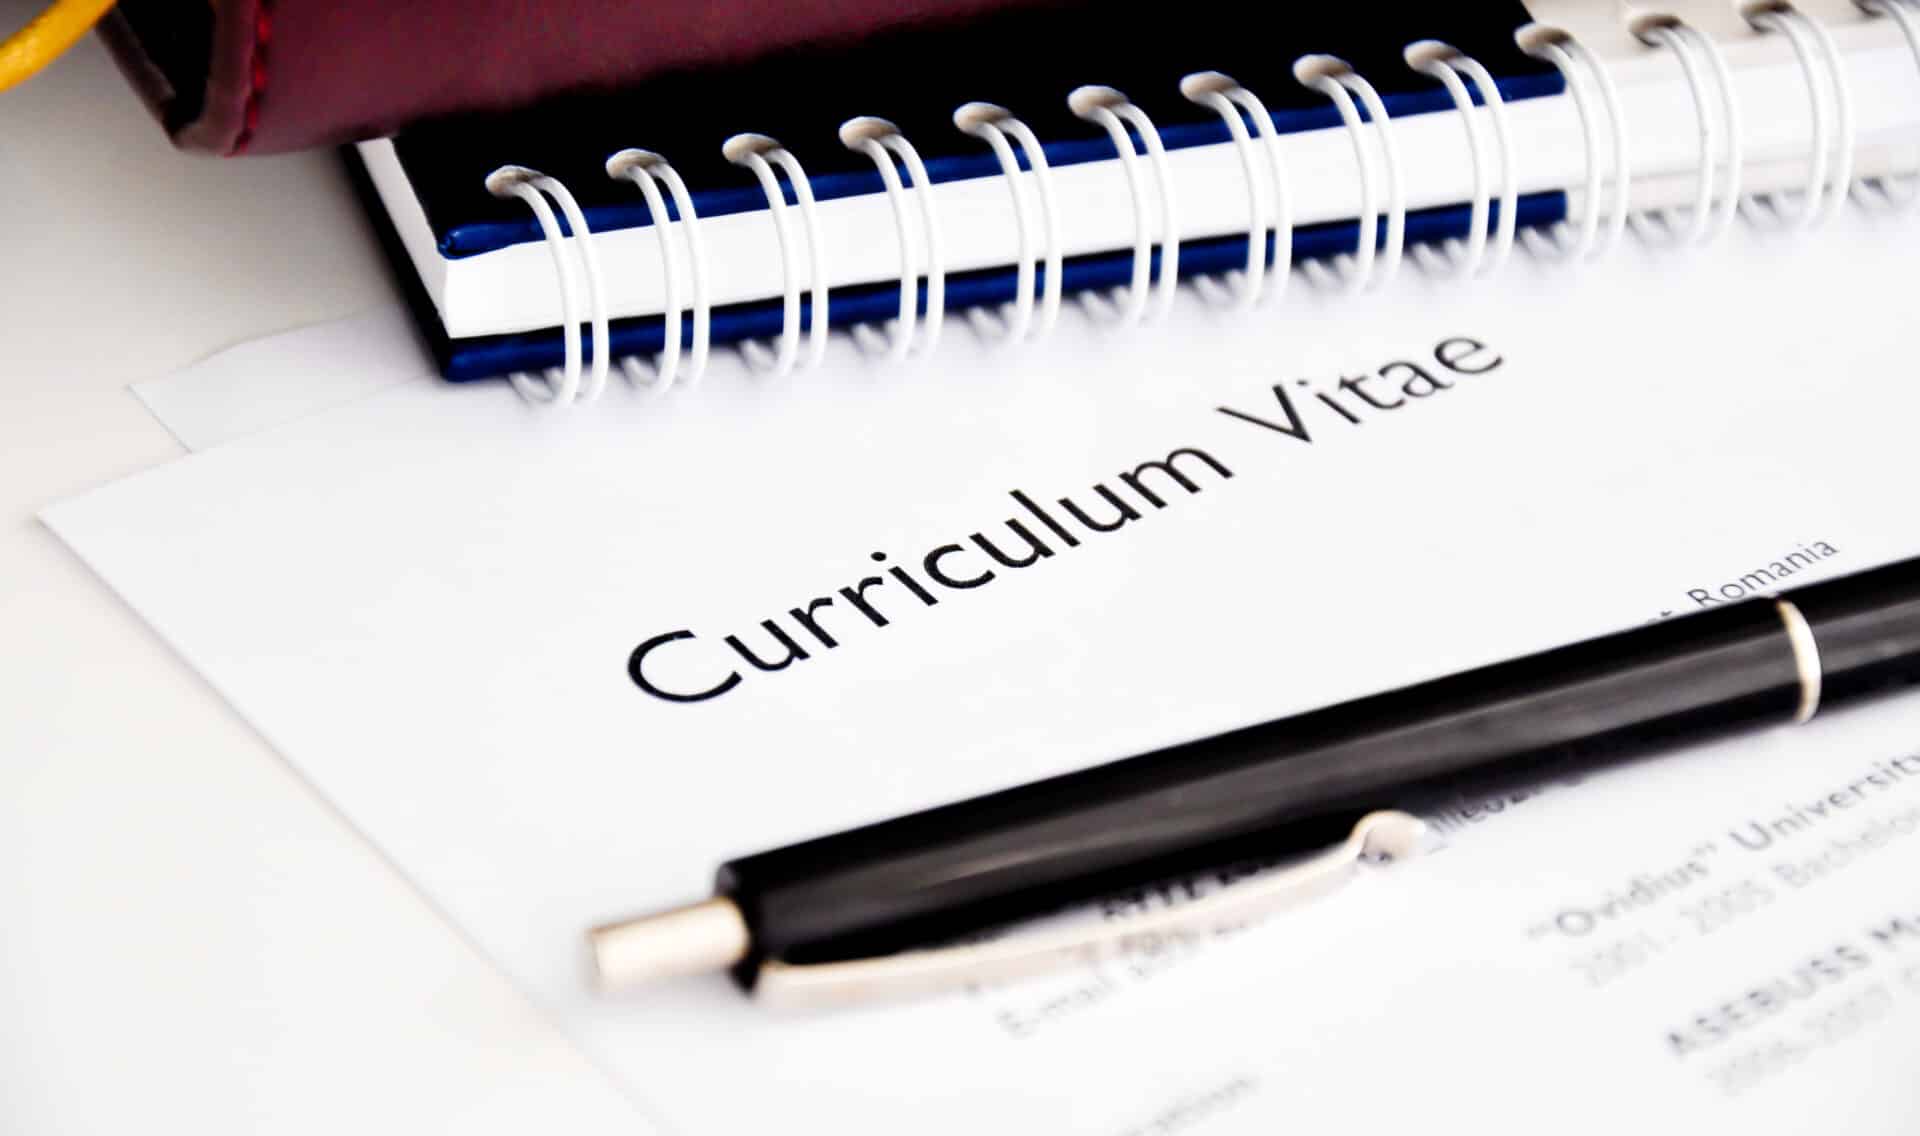 Curriculum Vitae Or Resume